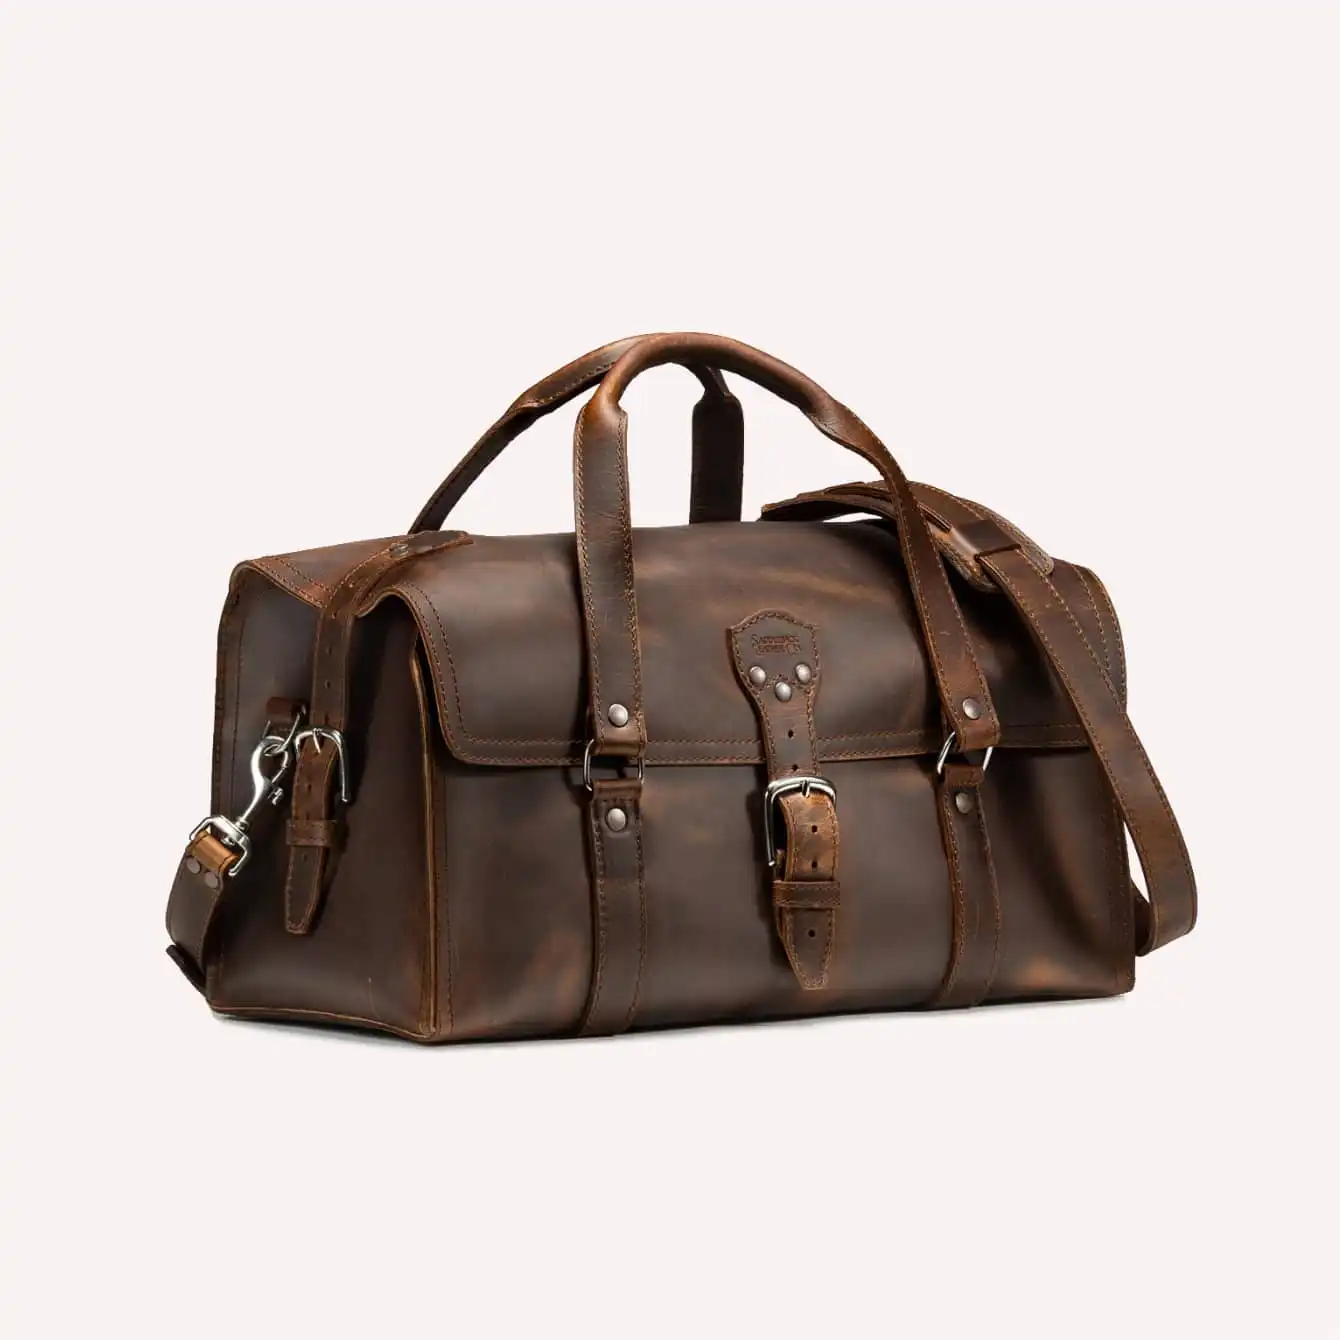 Saddleback Leather - Three Strap Leather Duffle Bag